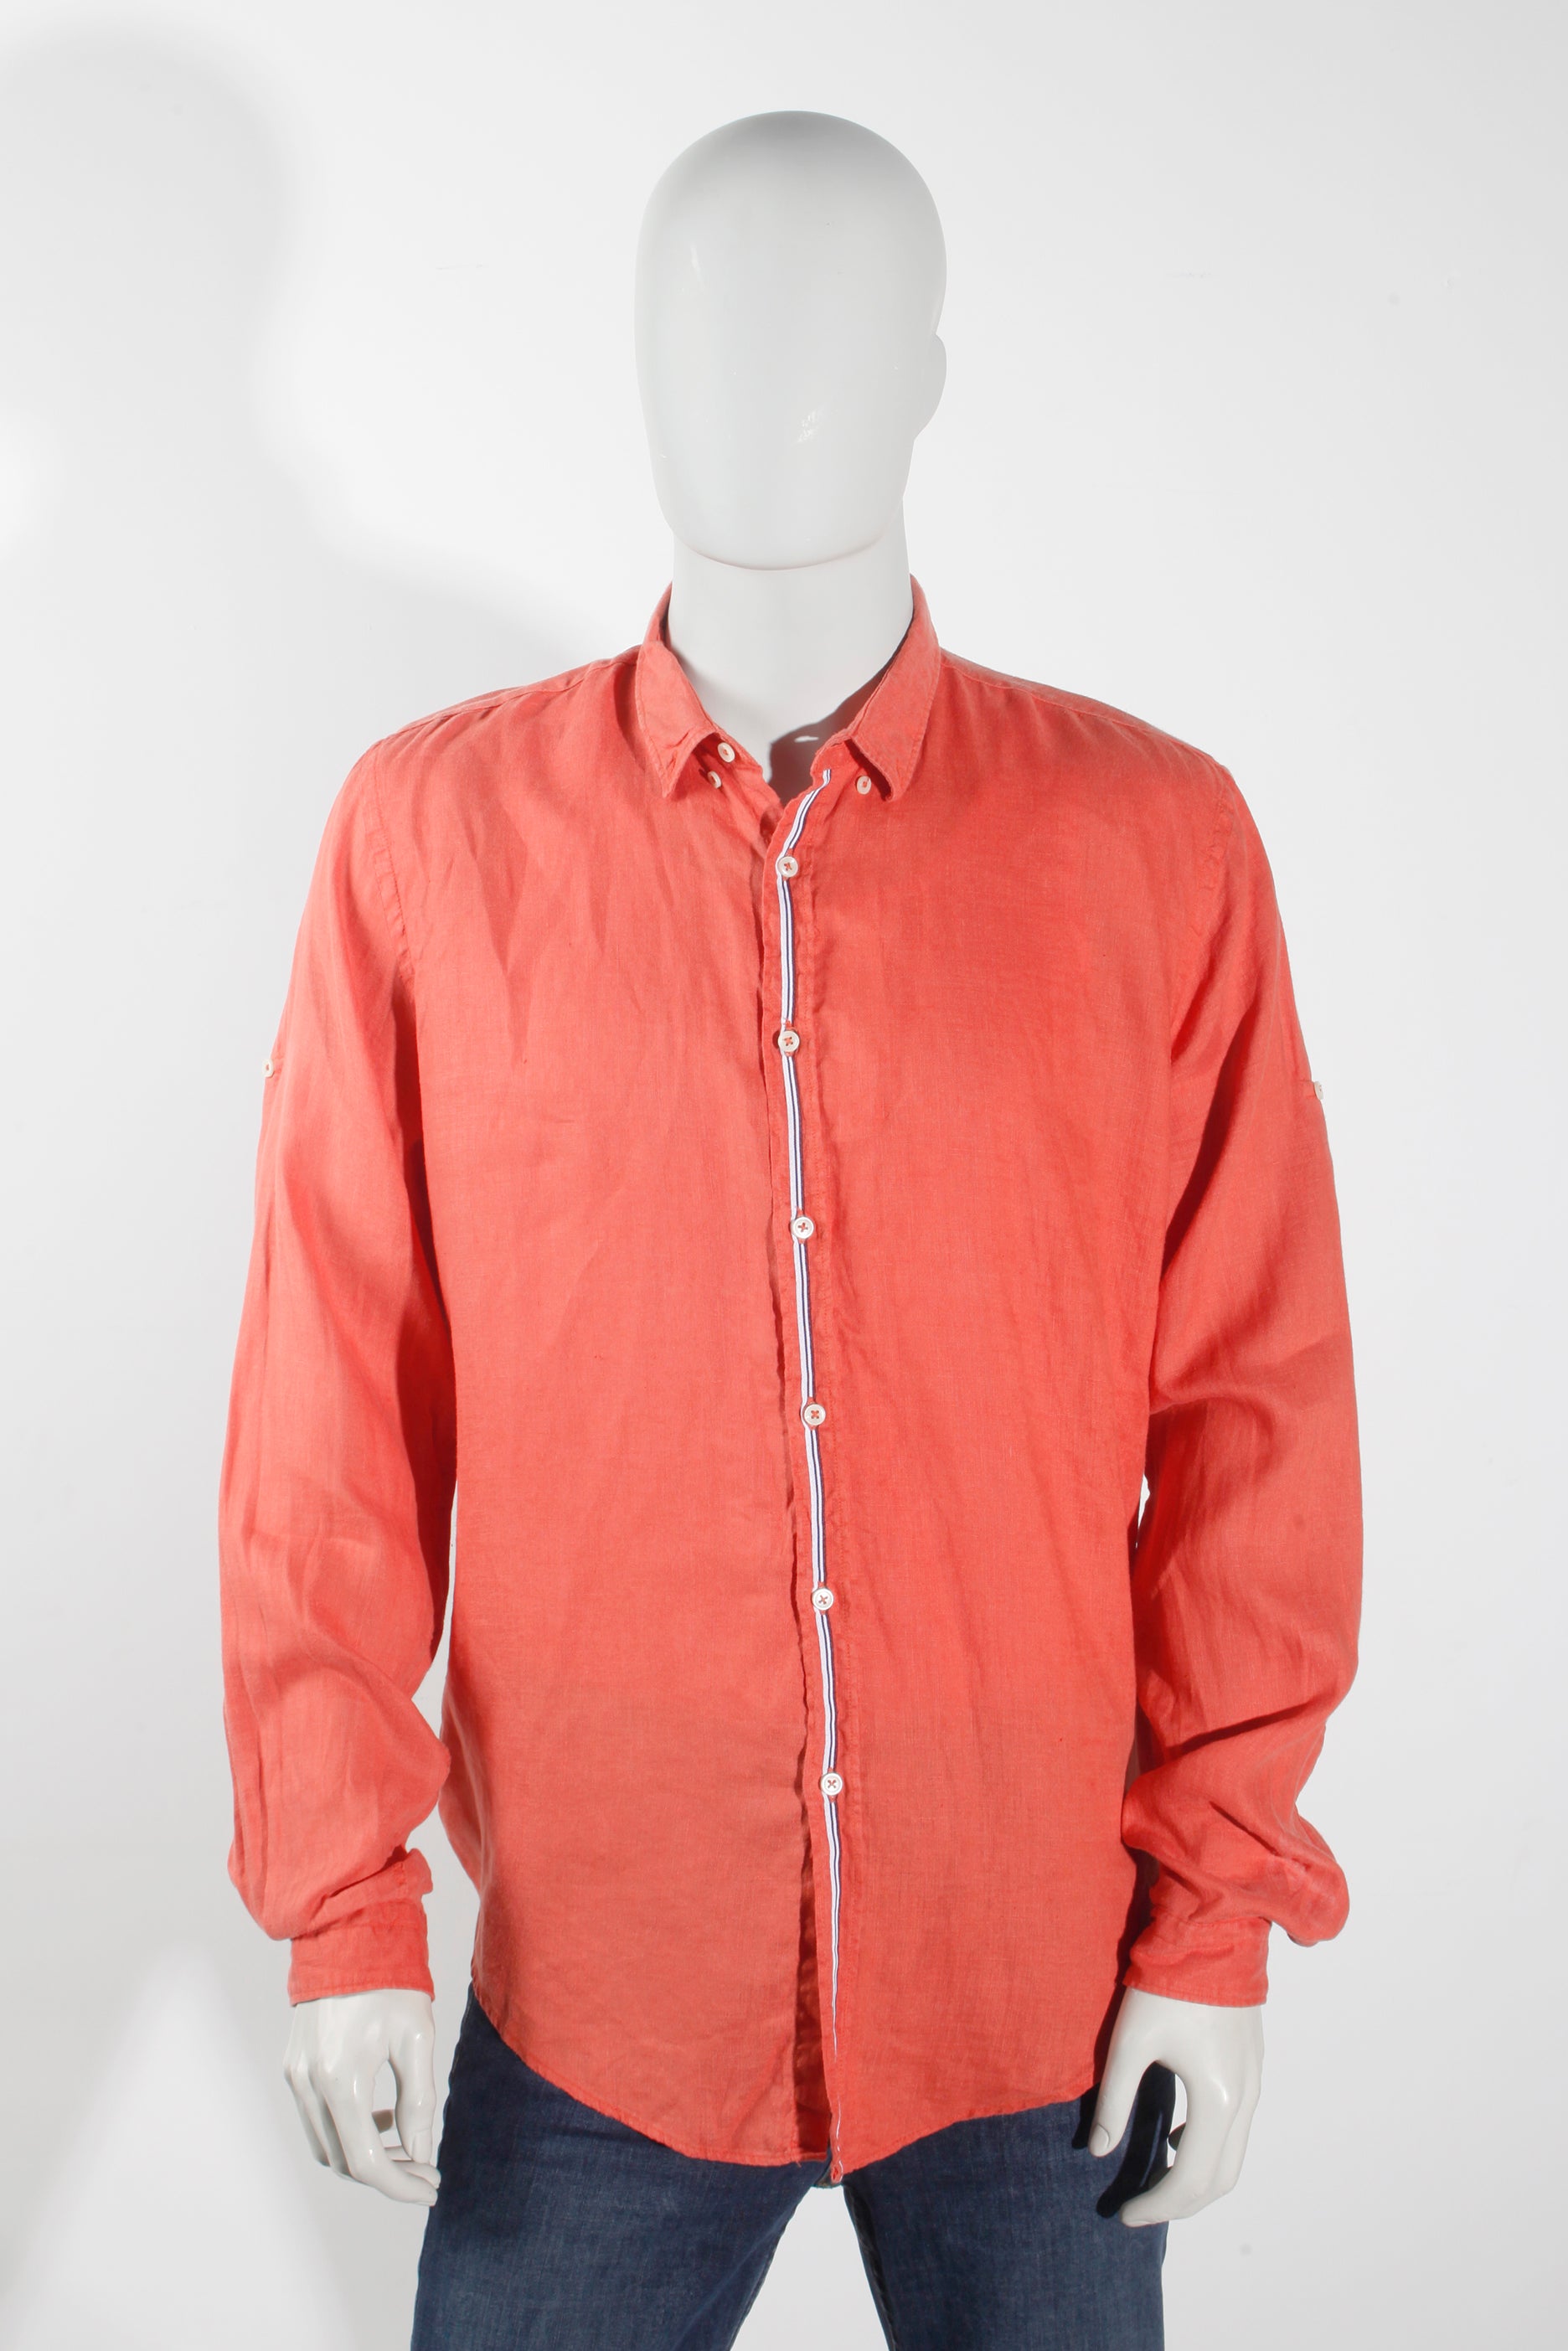 Zara Men's Orange Linen Shirt (XLarge)